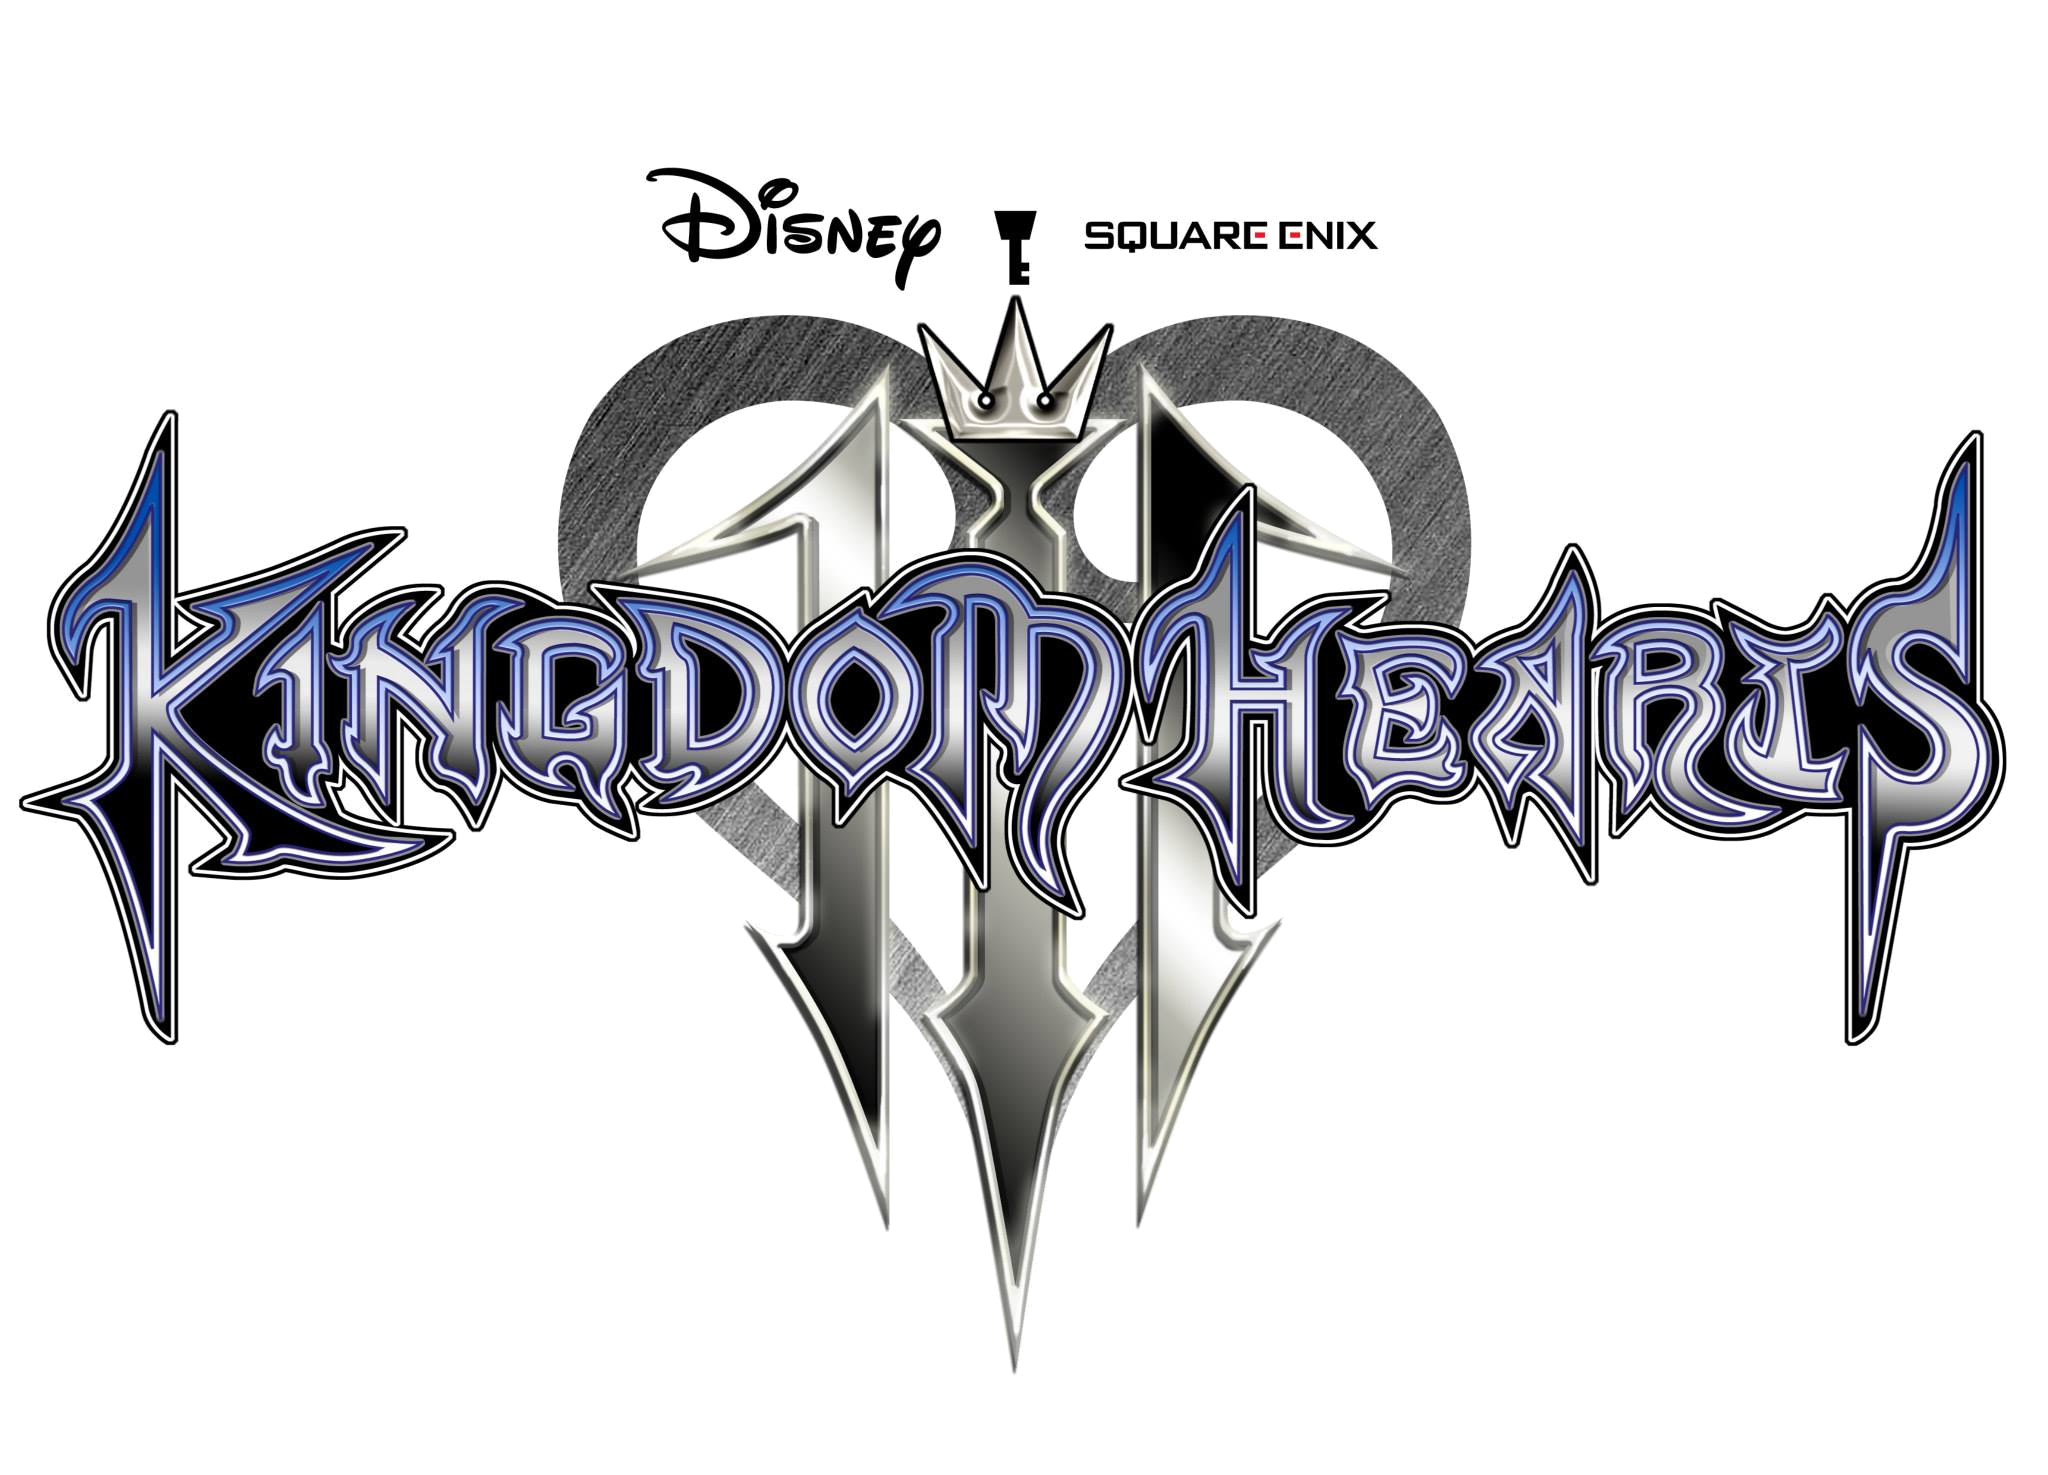 Al fin, salio el gameplay trailer de Kingdom Hearts III